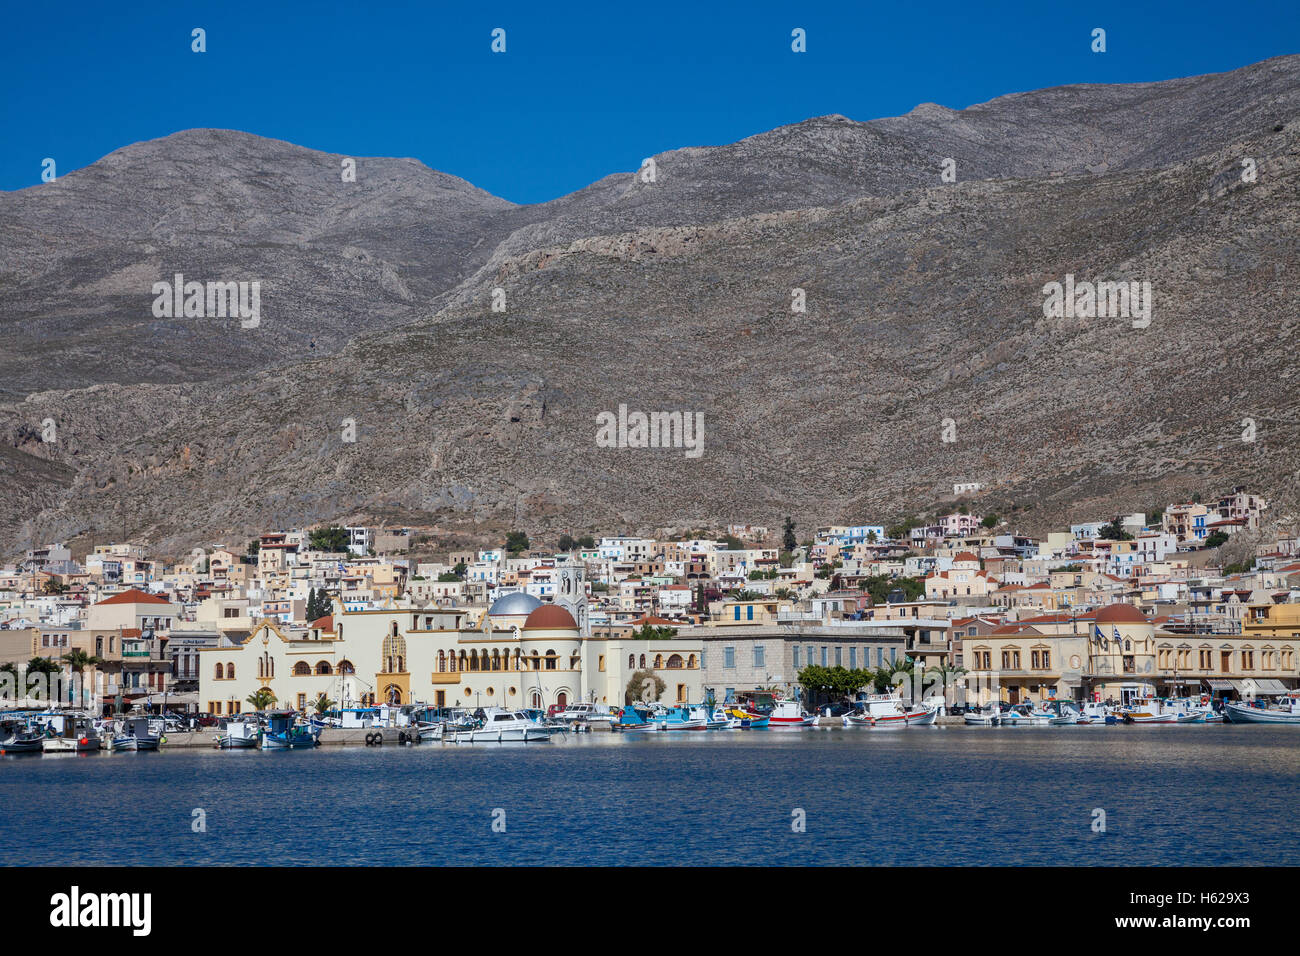 Port Potia capital of Kalymnos / Kalimnos Island on Mediterranean Sea, Greece. Stock Photo